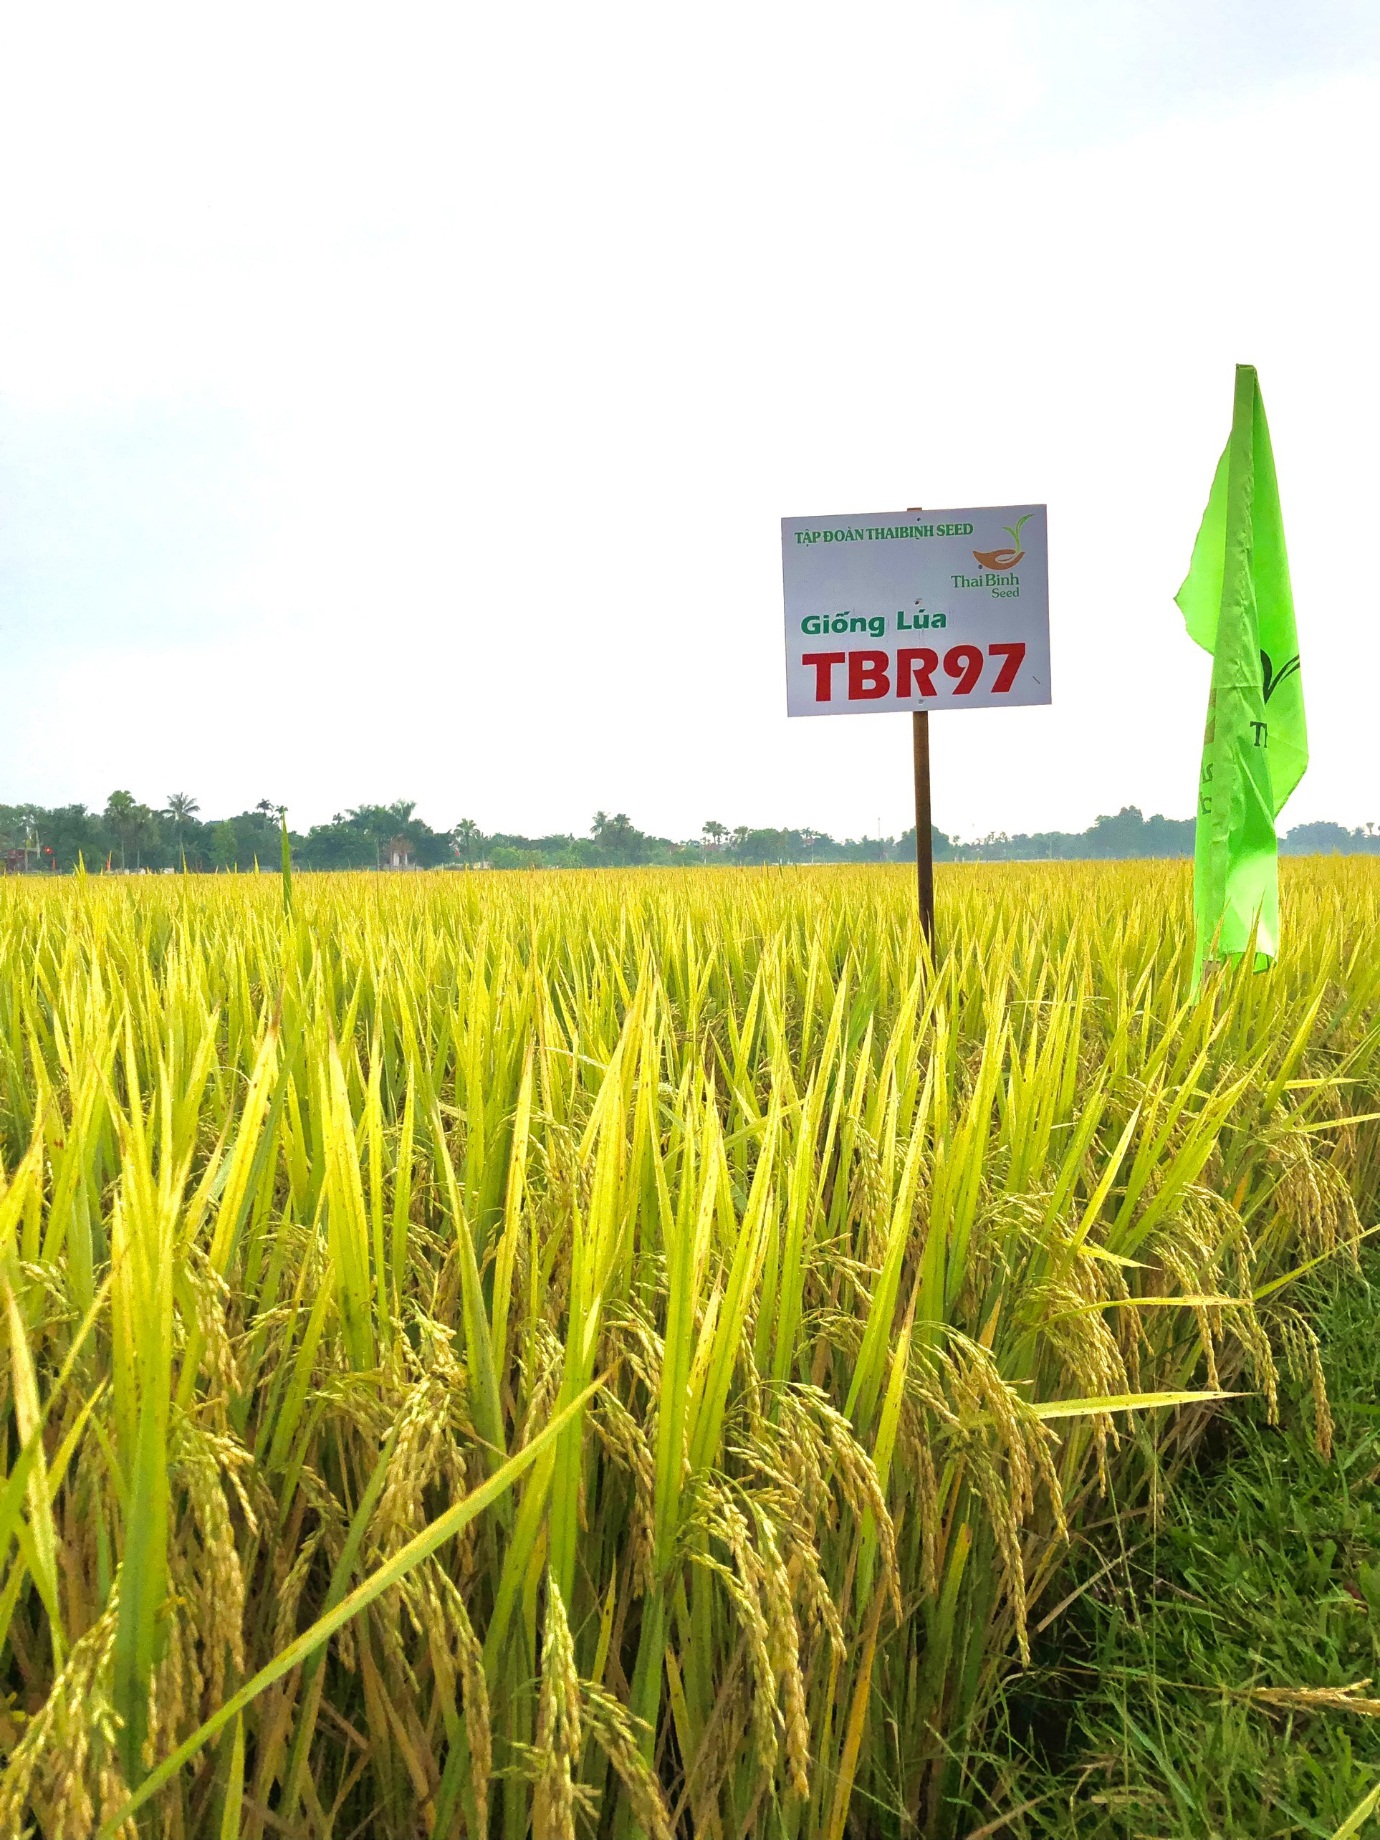 Giống lúa TBR97 của ThaiBinh Seed hứa hẹn là quả &quot;bom tấn&quot; trong sản xuất lúa trên cả nước - Ảnh 5.